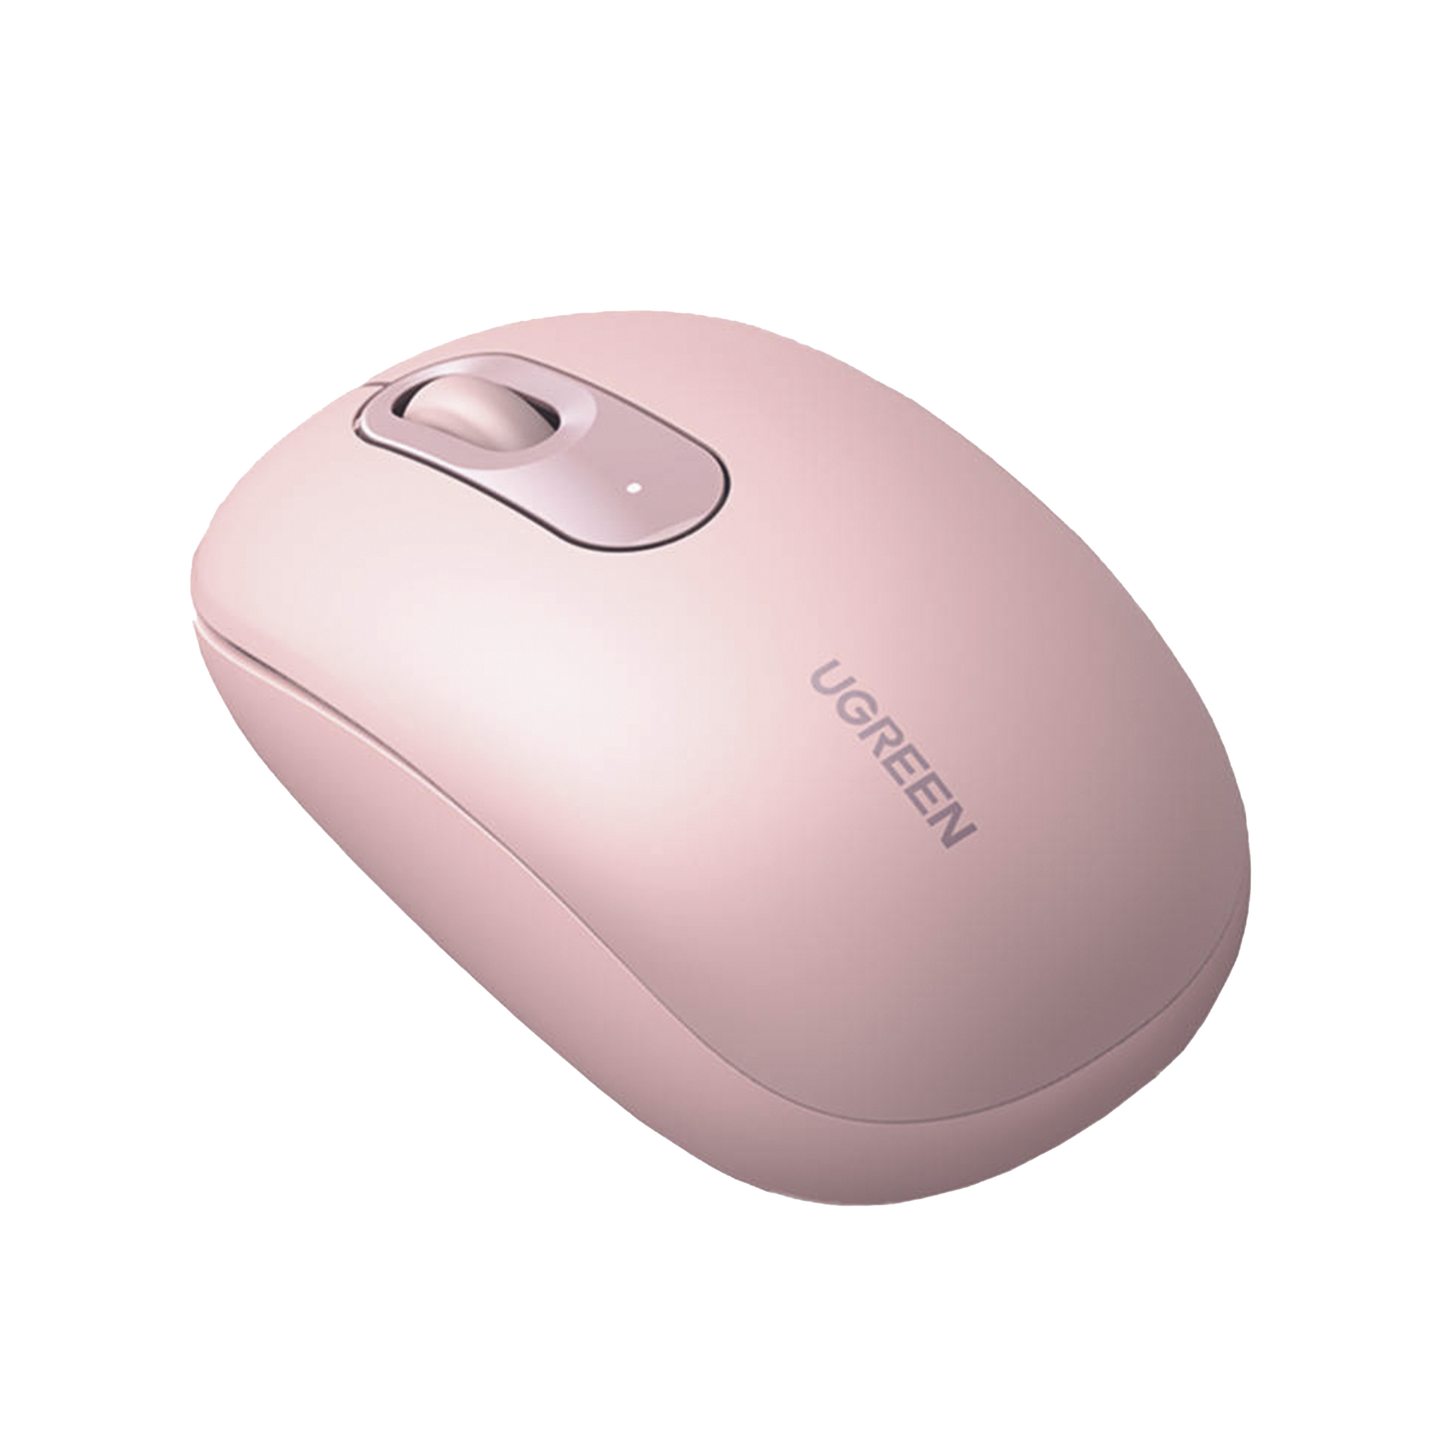 Mouse Inalámbrico 2.4G 800/1200/1600/2400 DPI / Función de 3 botones / Alcance 10m / Silencioso / Ergonómico / Anti-caída y Anti-interferencias / Color Dusty Pink / Batería Alcalina AA (incluida).